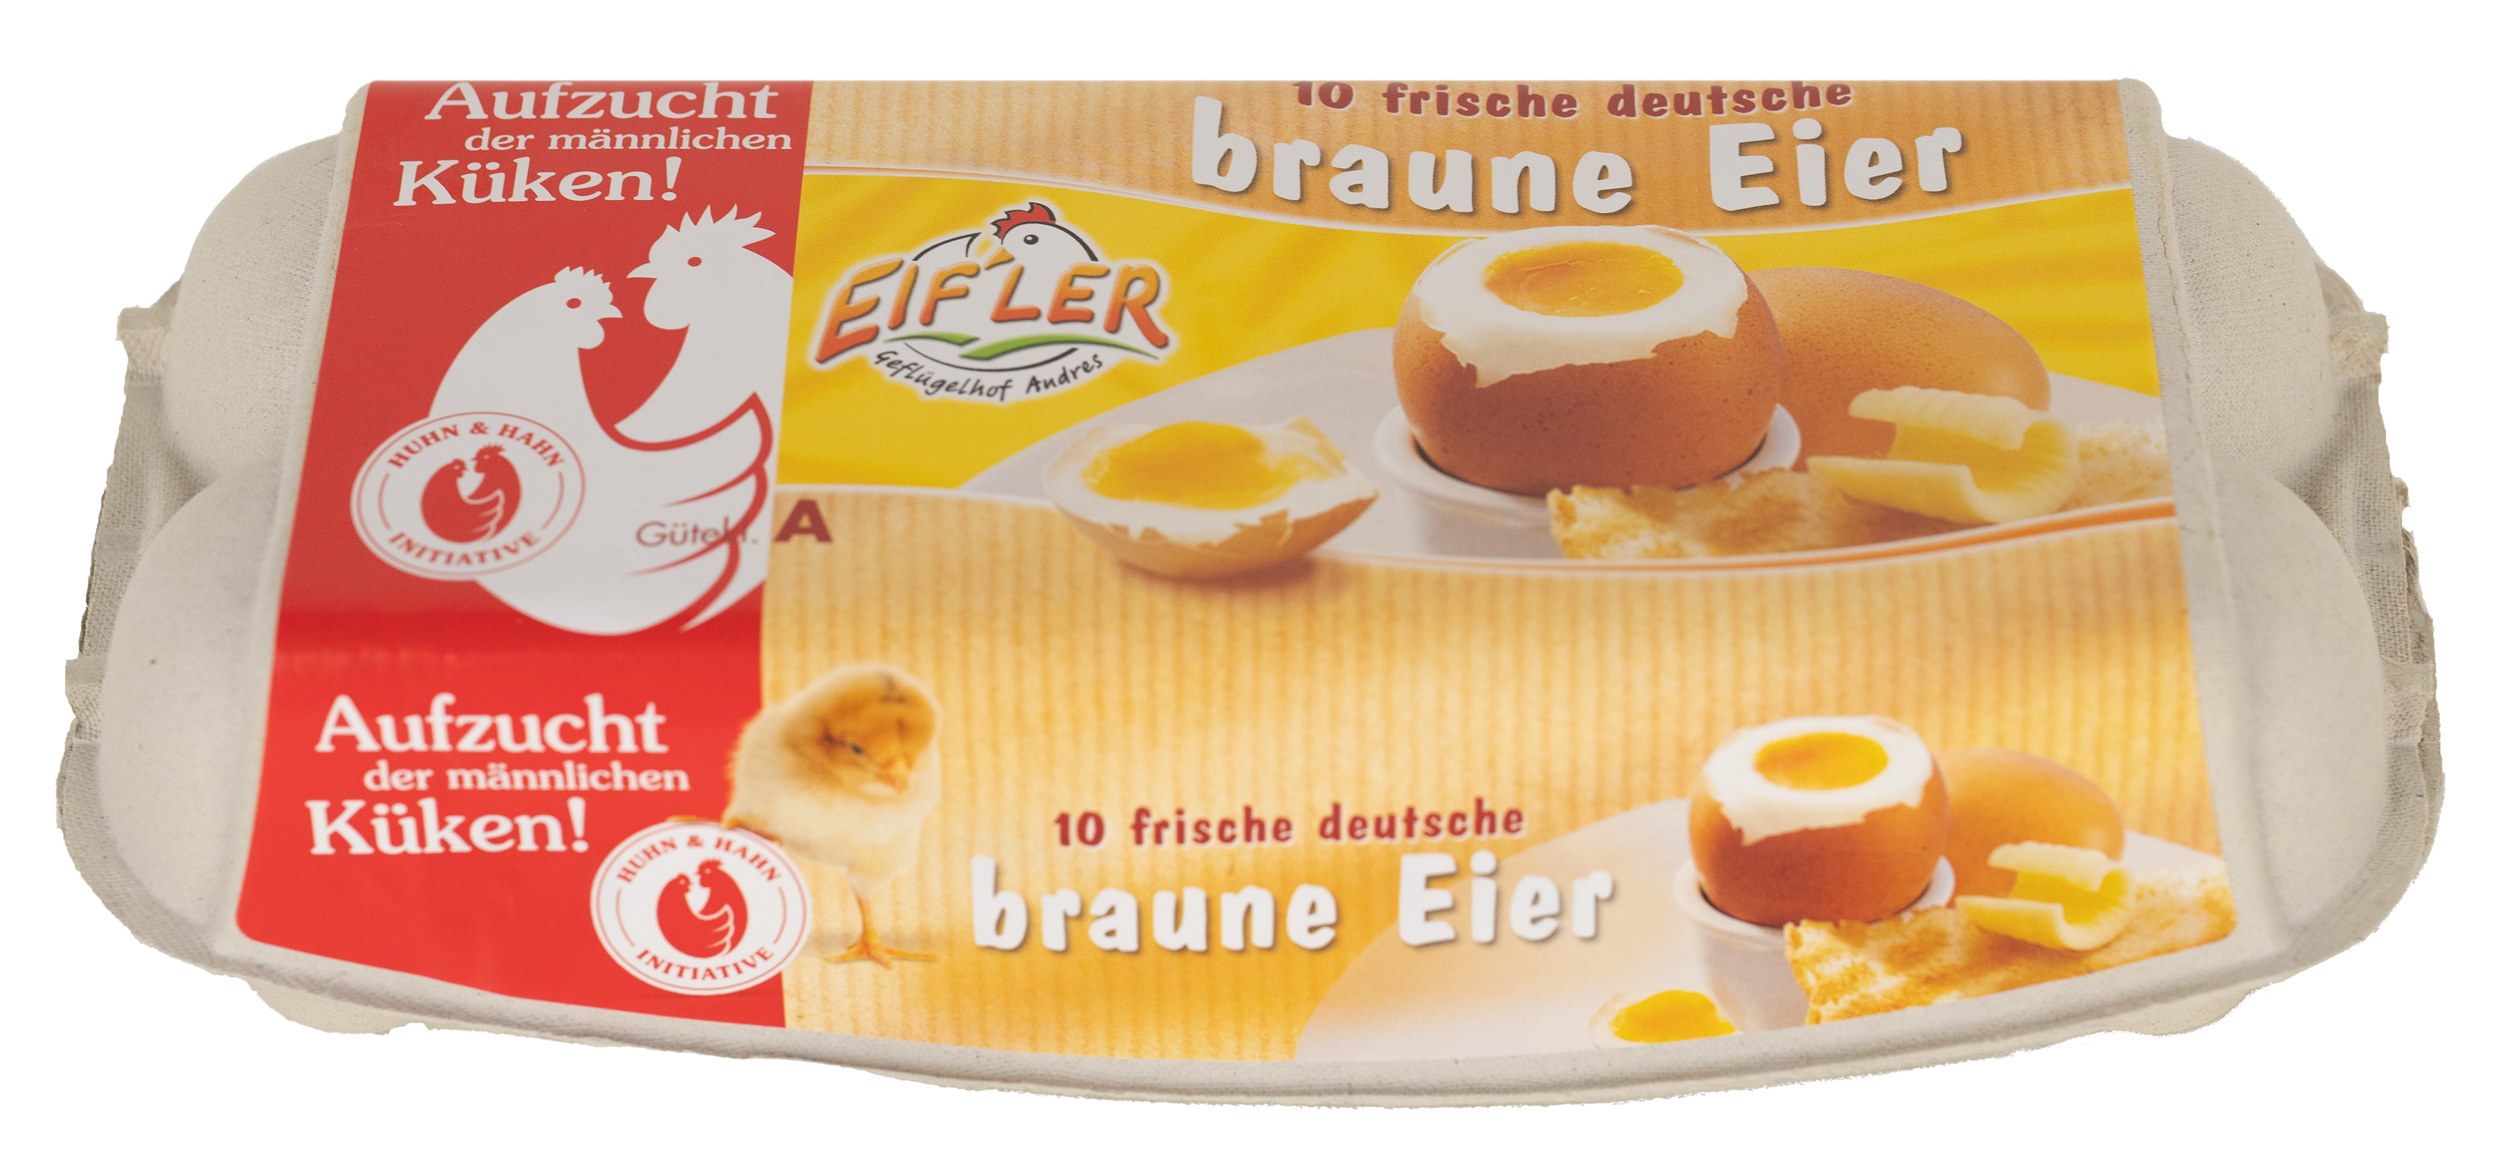 10 frische deutsche braune Eier // Geflügelhof Andres Mendig